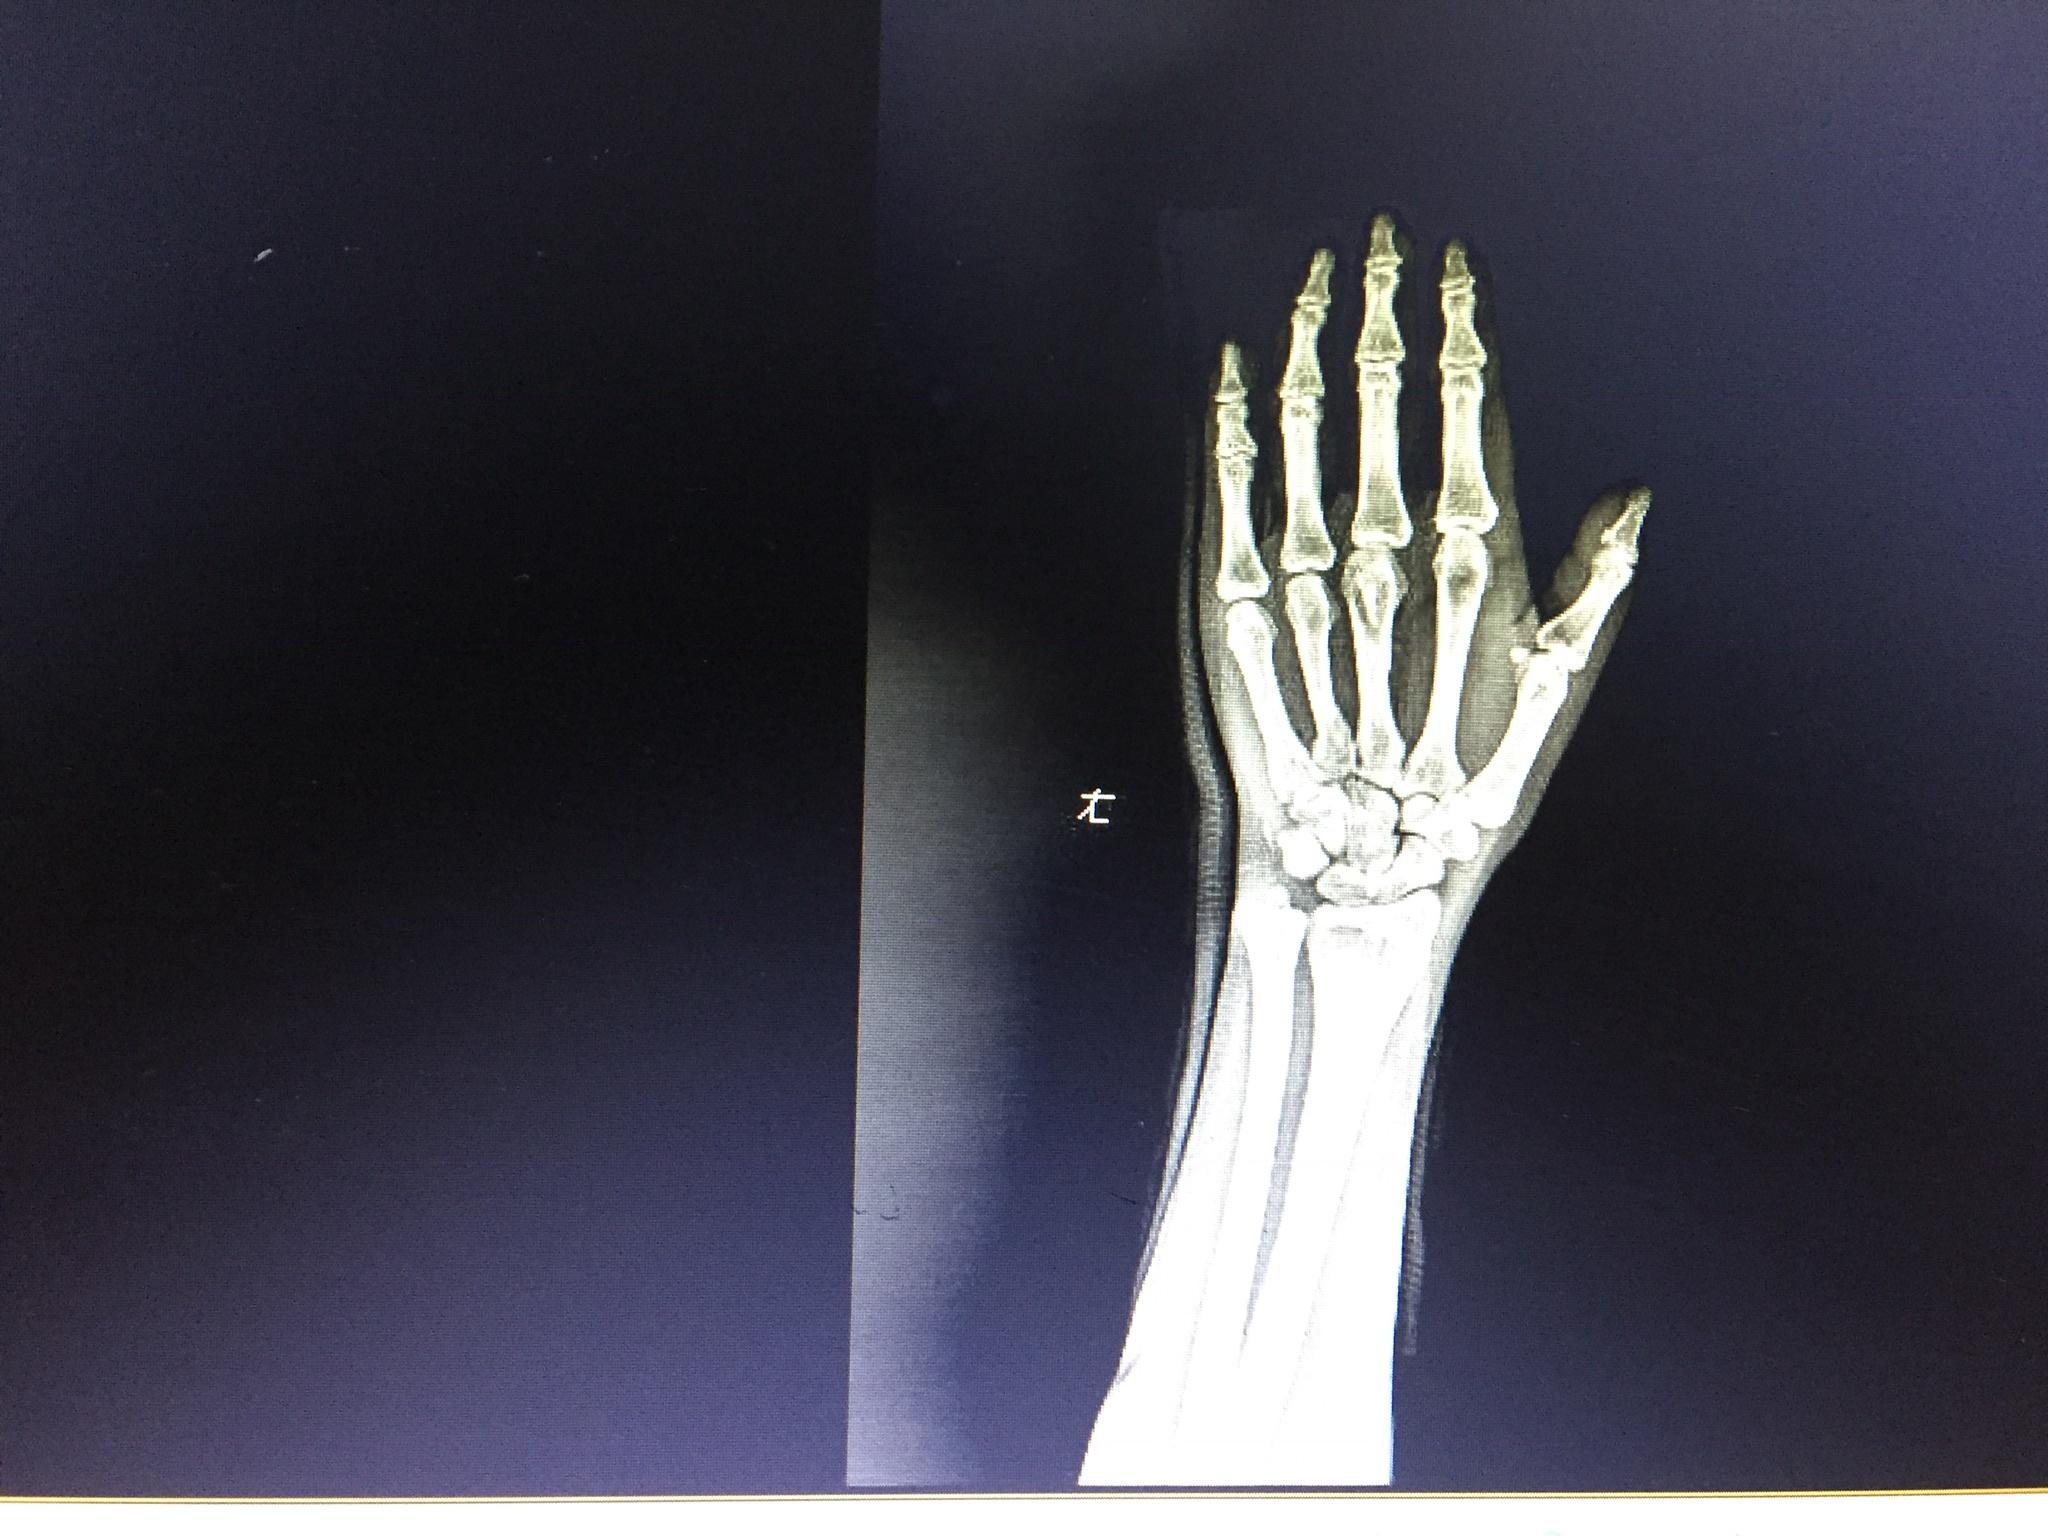 右手第一掌骨基底部骨折病例报告 - 病例中心(诊疗助手) - 爱爱医医学网